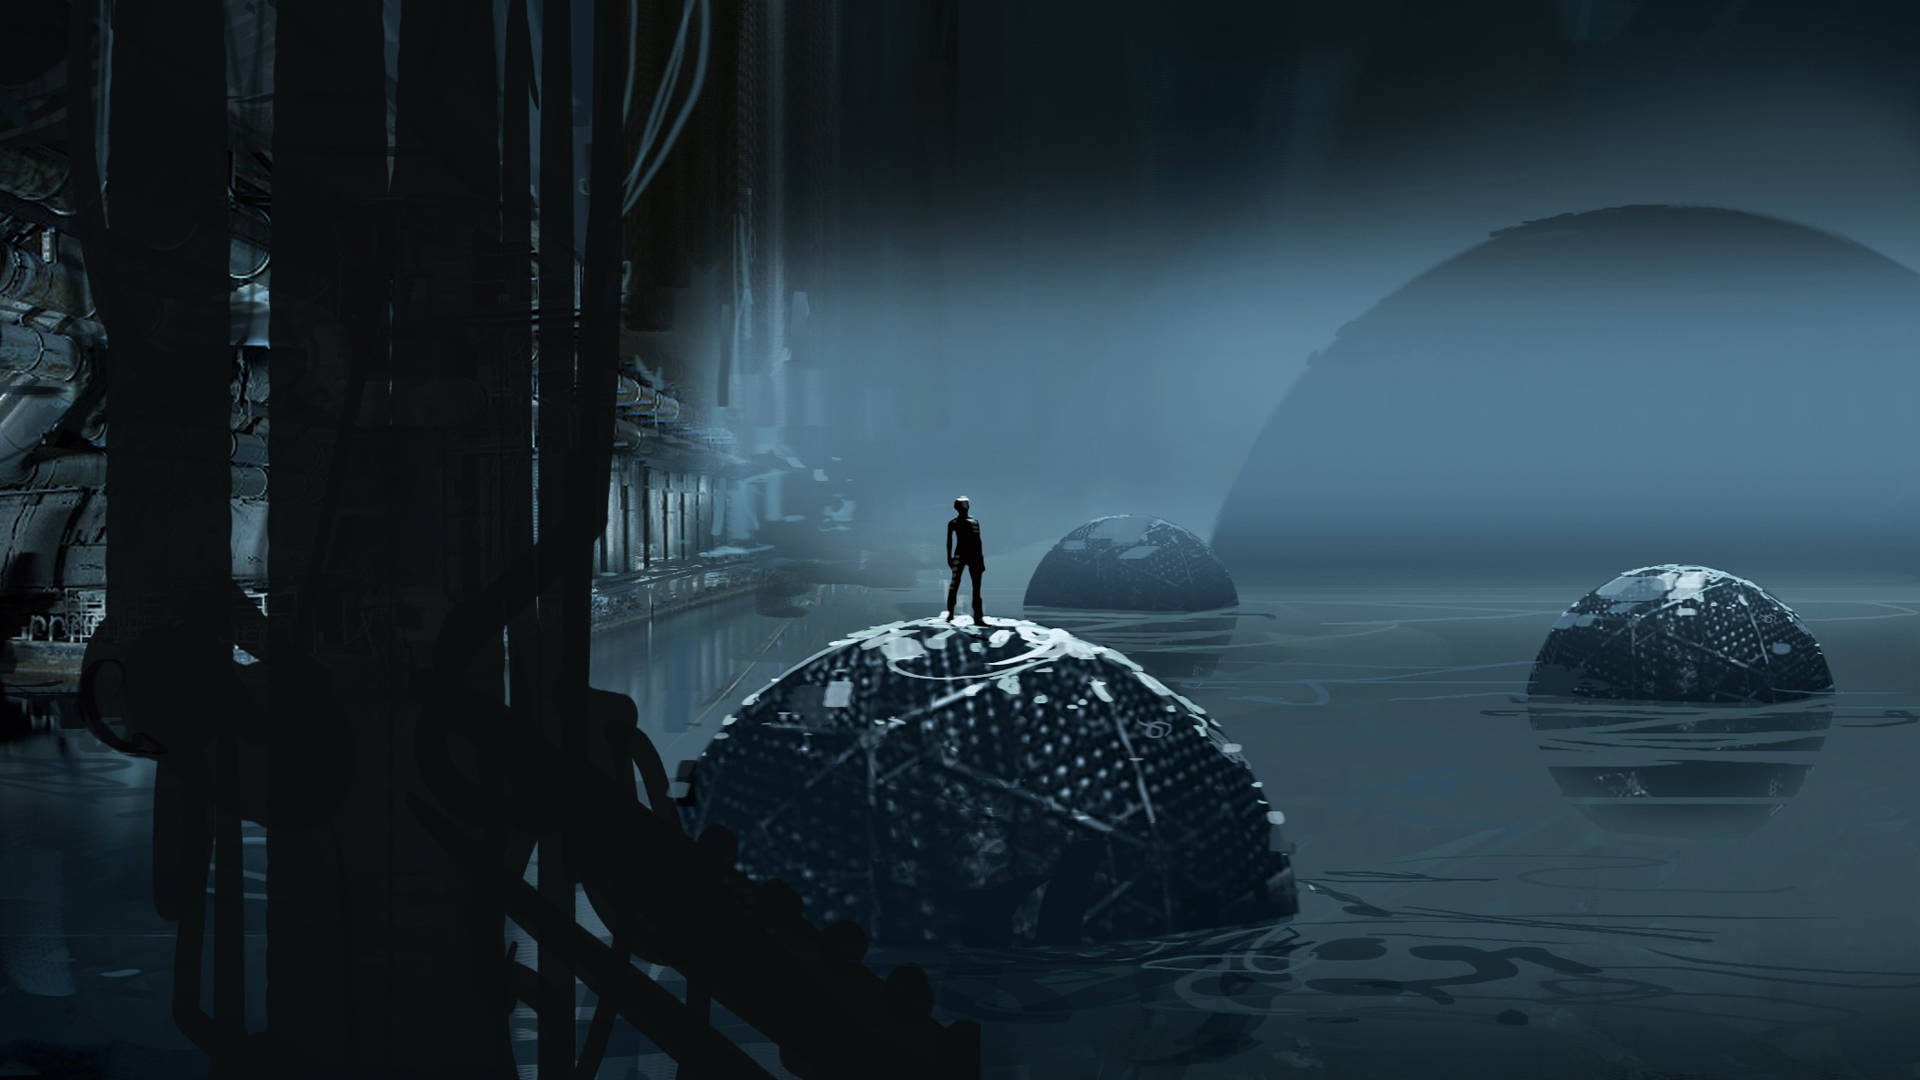 Einmann Steht In Einem Dunklen, Wasserreichen Bereich. Wallpaper